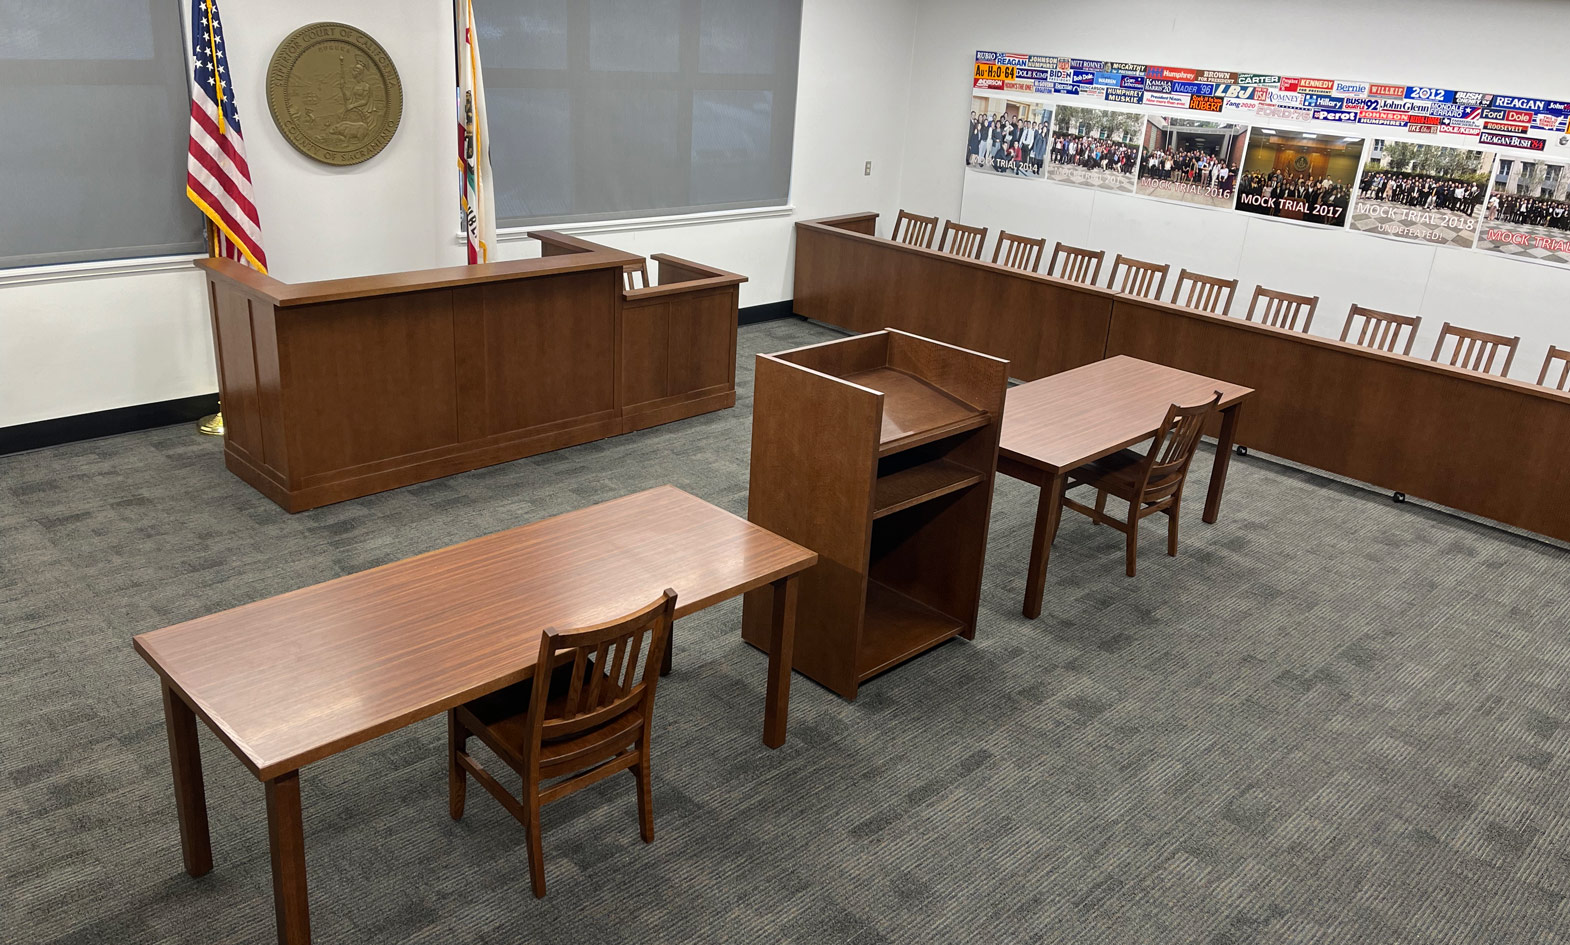 High School Mock Courtroom Furniture